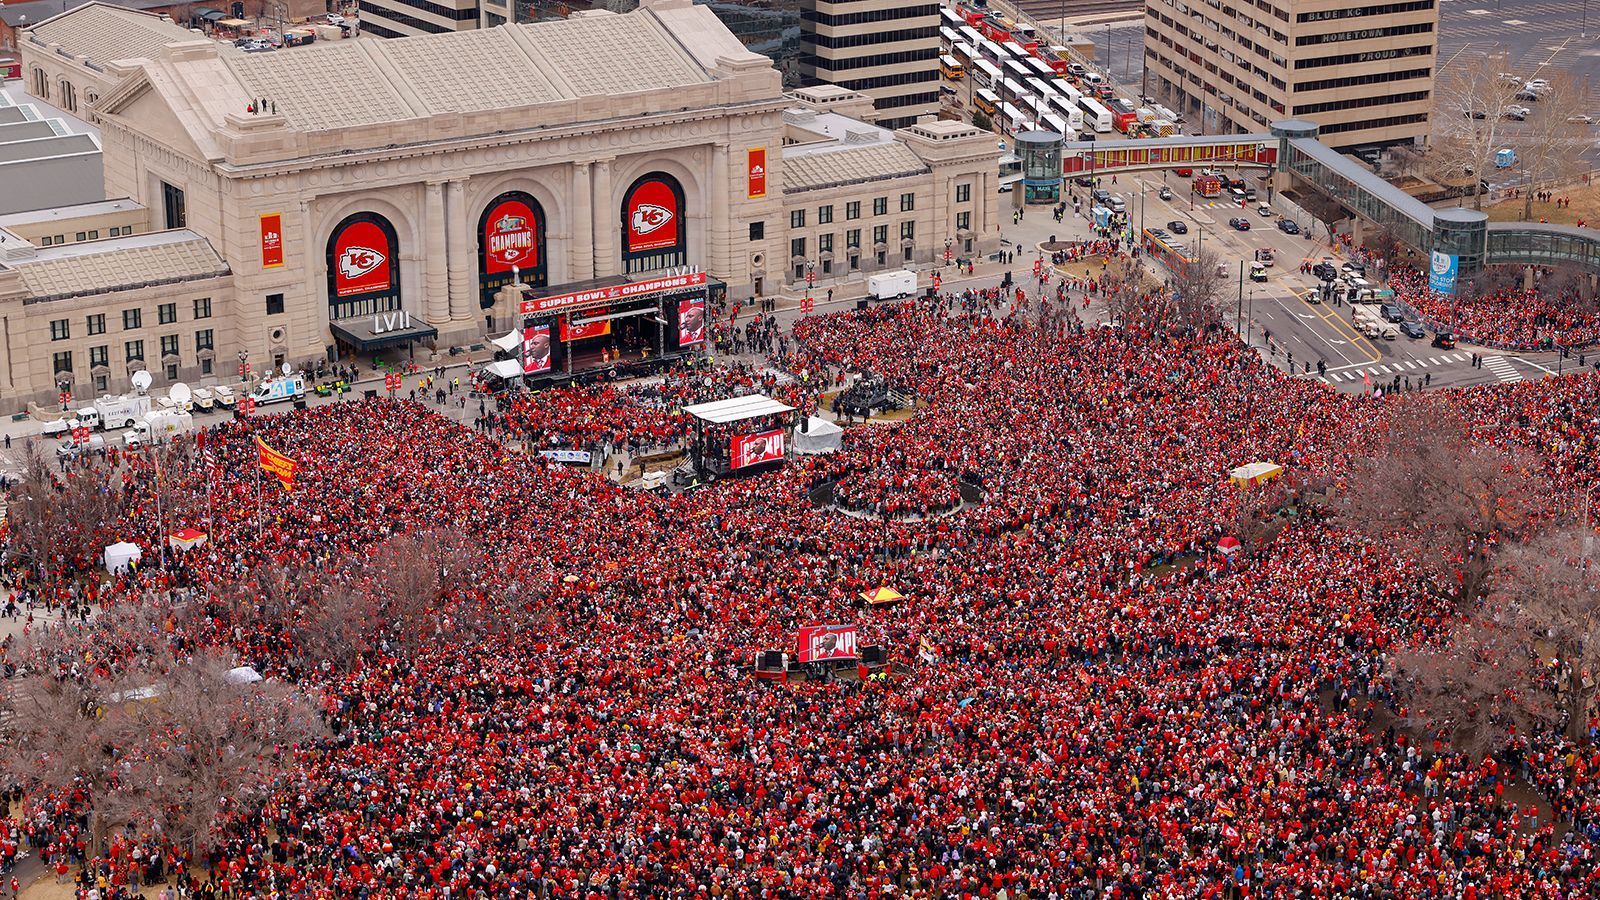 
                <strong>Ein rotes Meer</strong><br>
                Tausende Menschen versammeln sich, um die Reden der Chiefs-Stars zu hören.
              